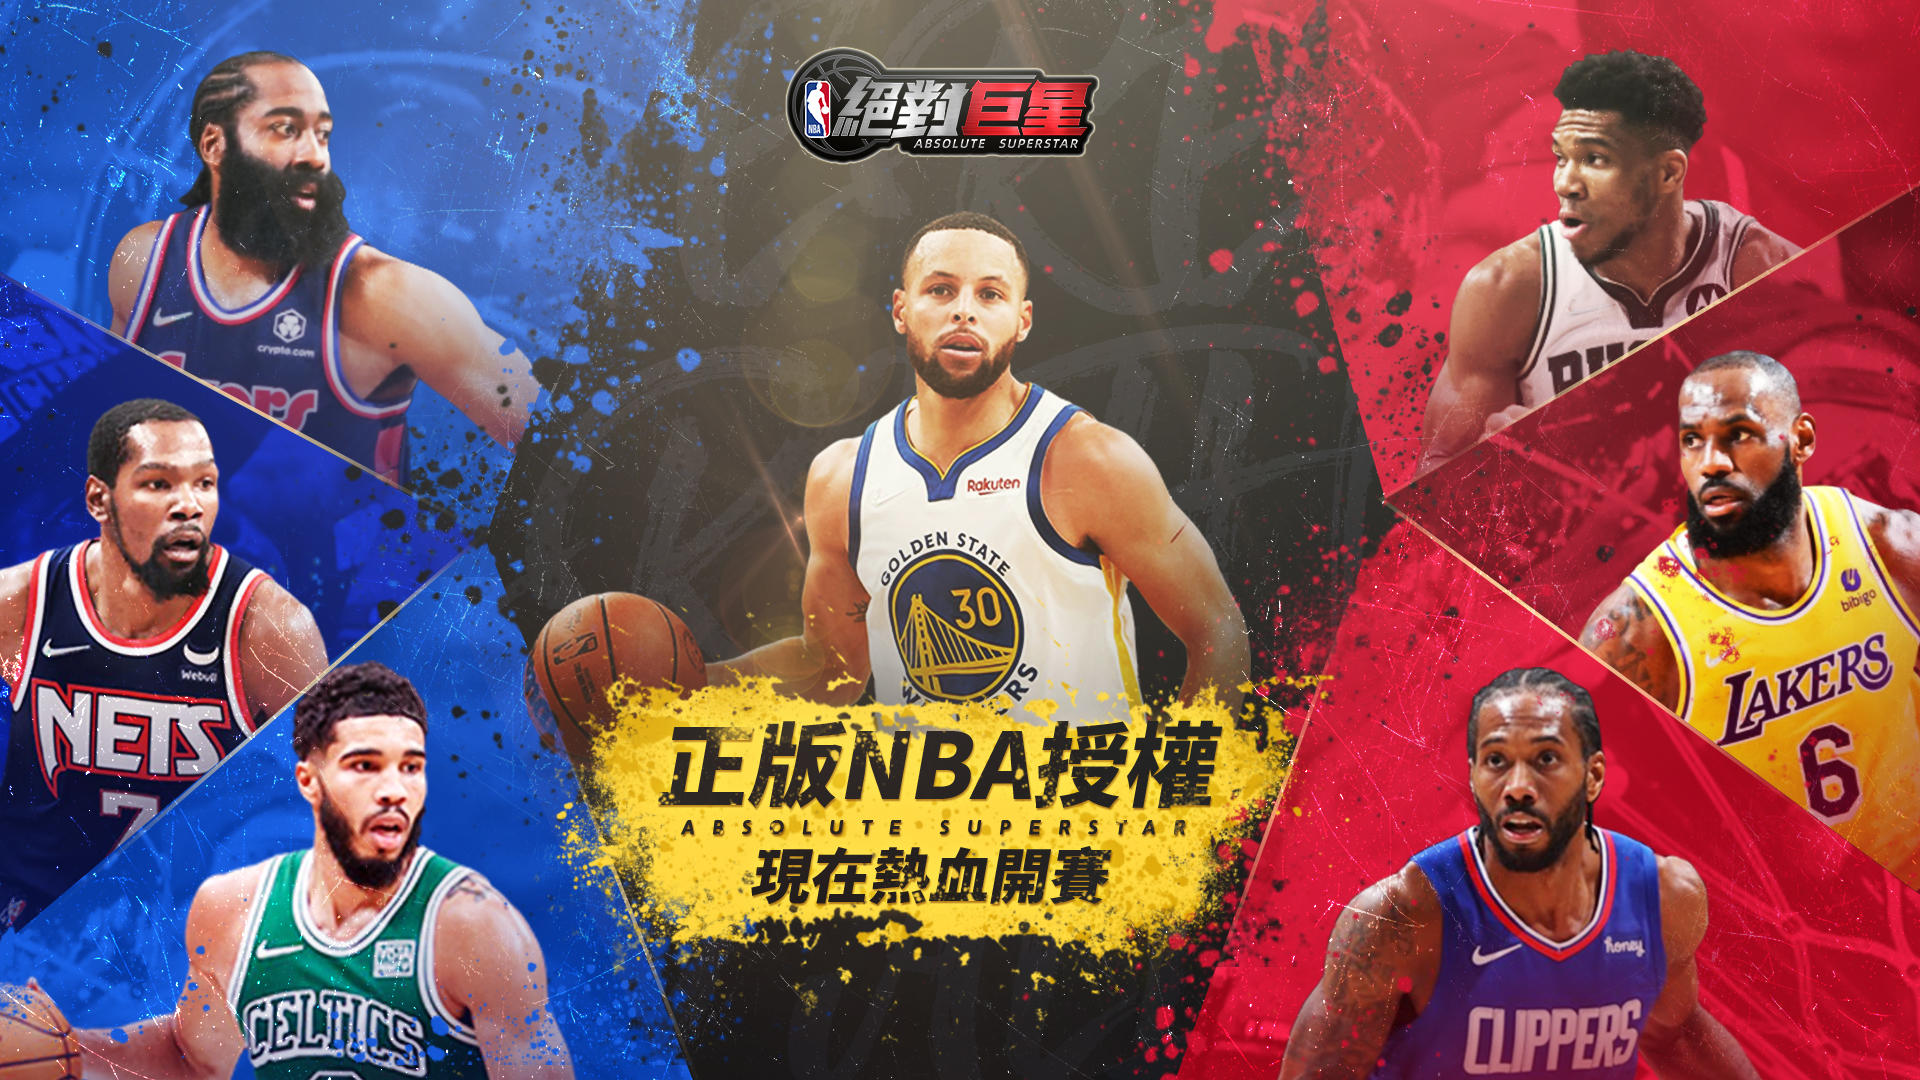 Banner of NBA absolute superstar 0.0.19